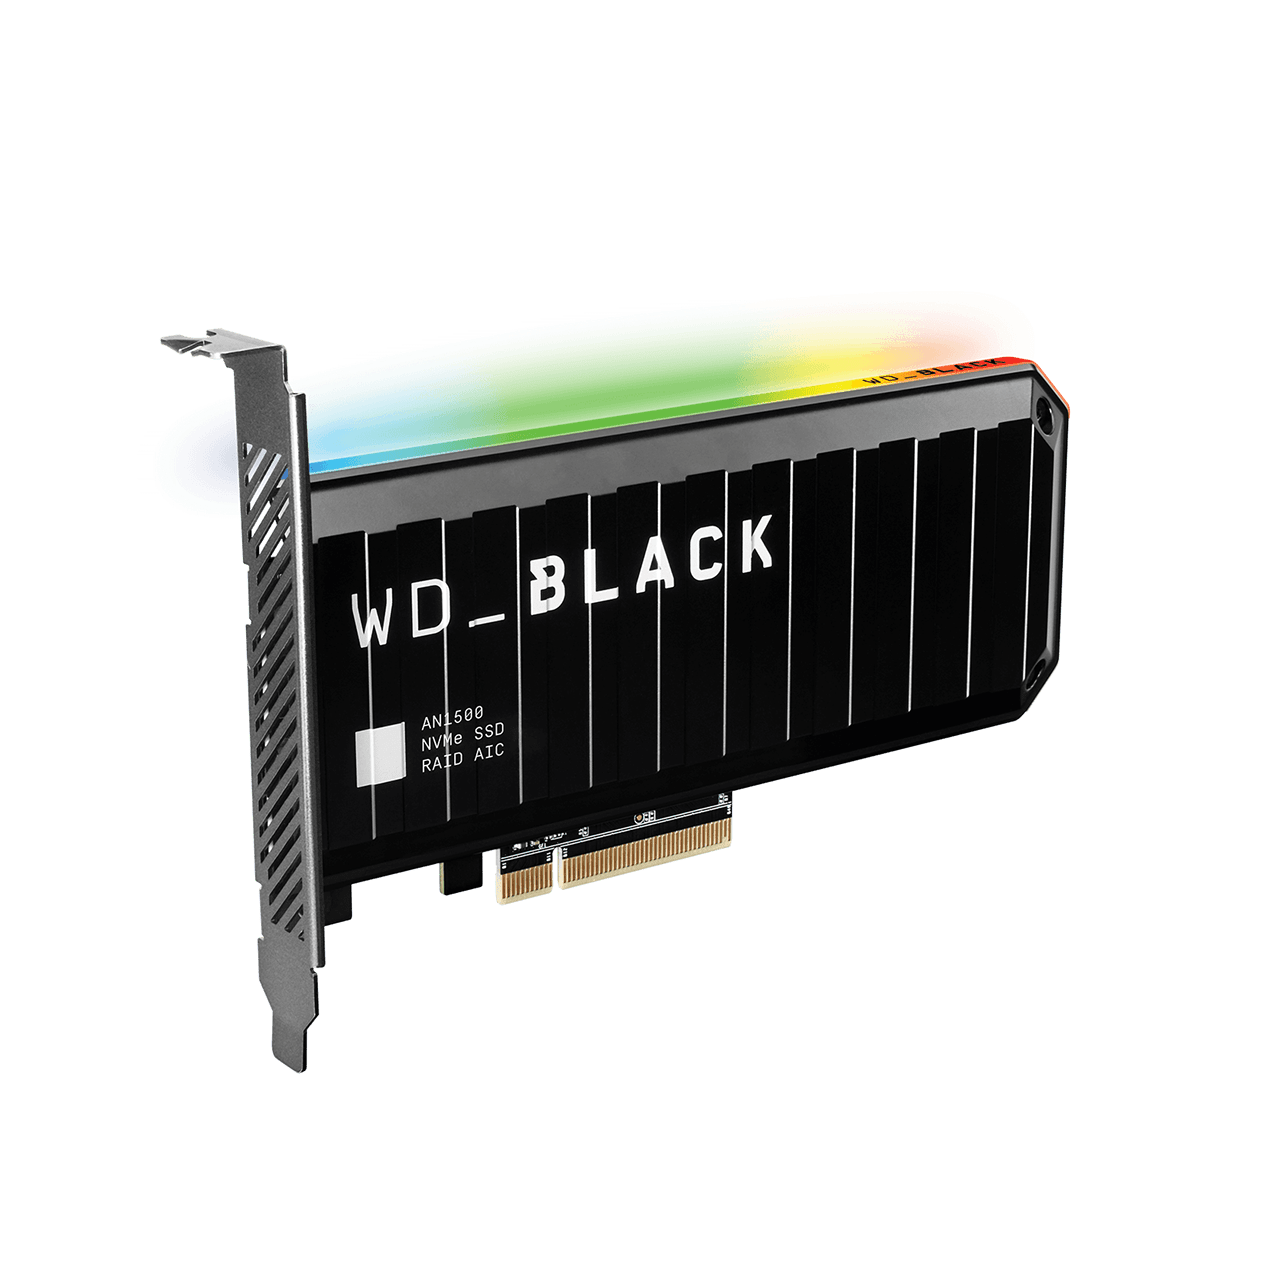 WD Black AN1500 1TB PCIe NVMe Gen 3.0 x 4 SSD 